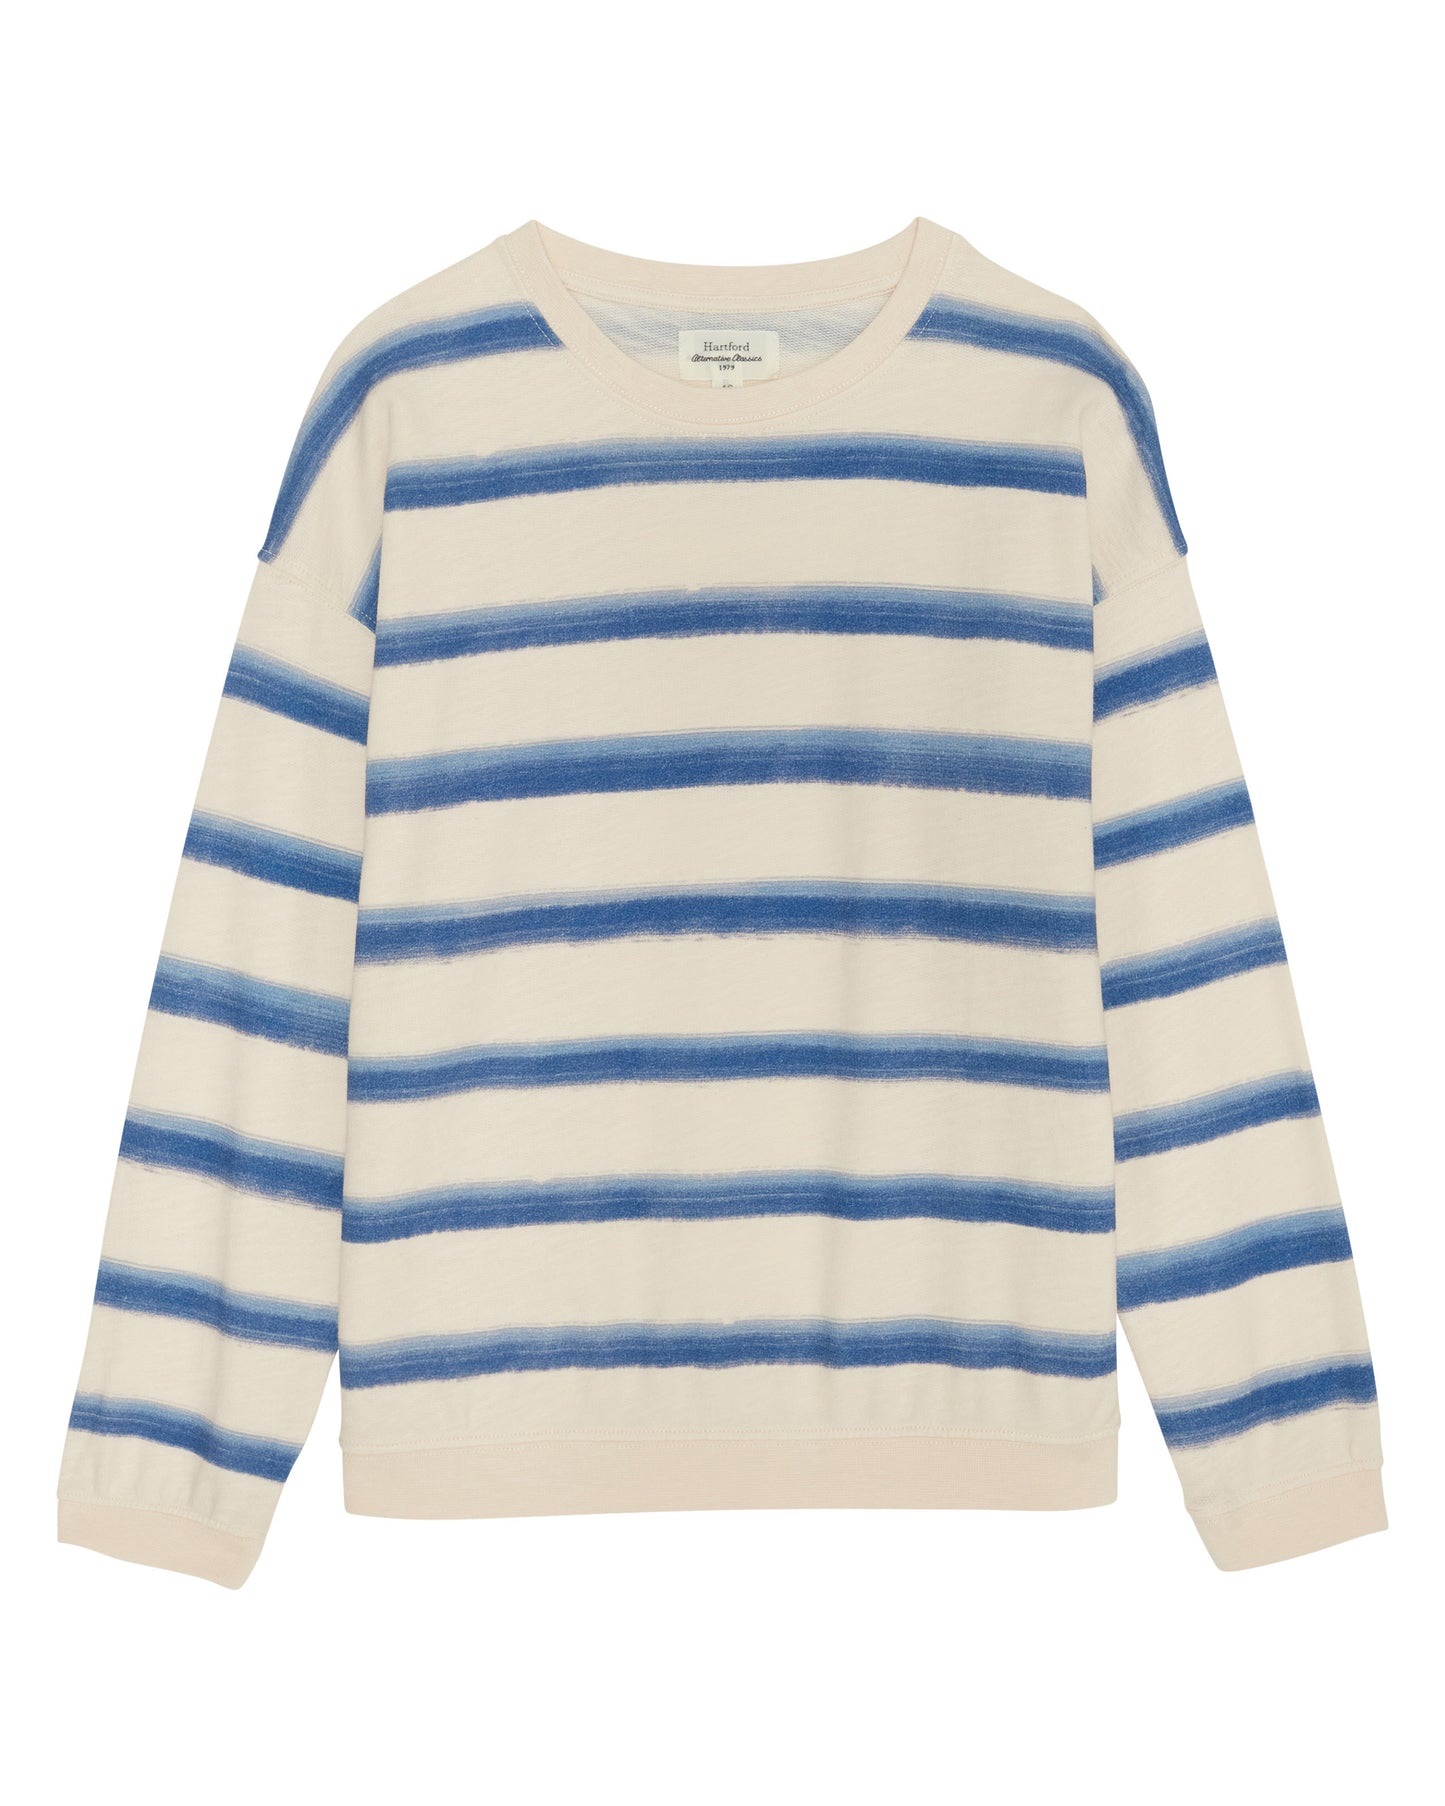 Sweatshirt Fille en molleton fin rayé Bleu & Ecru Tayac